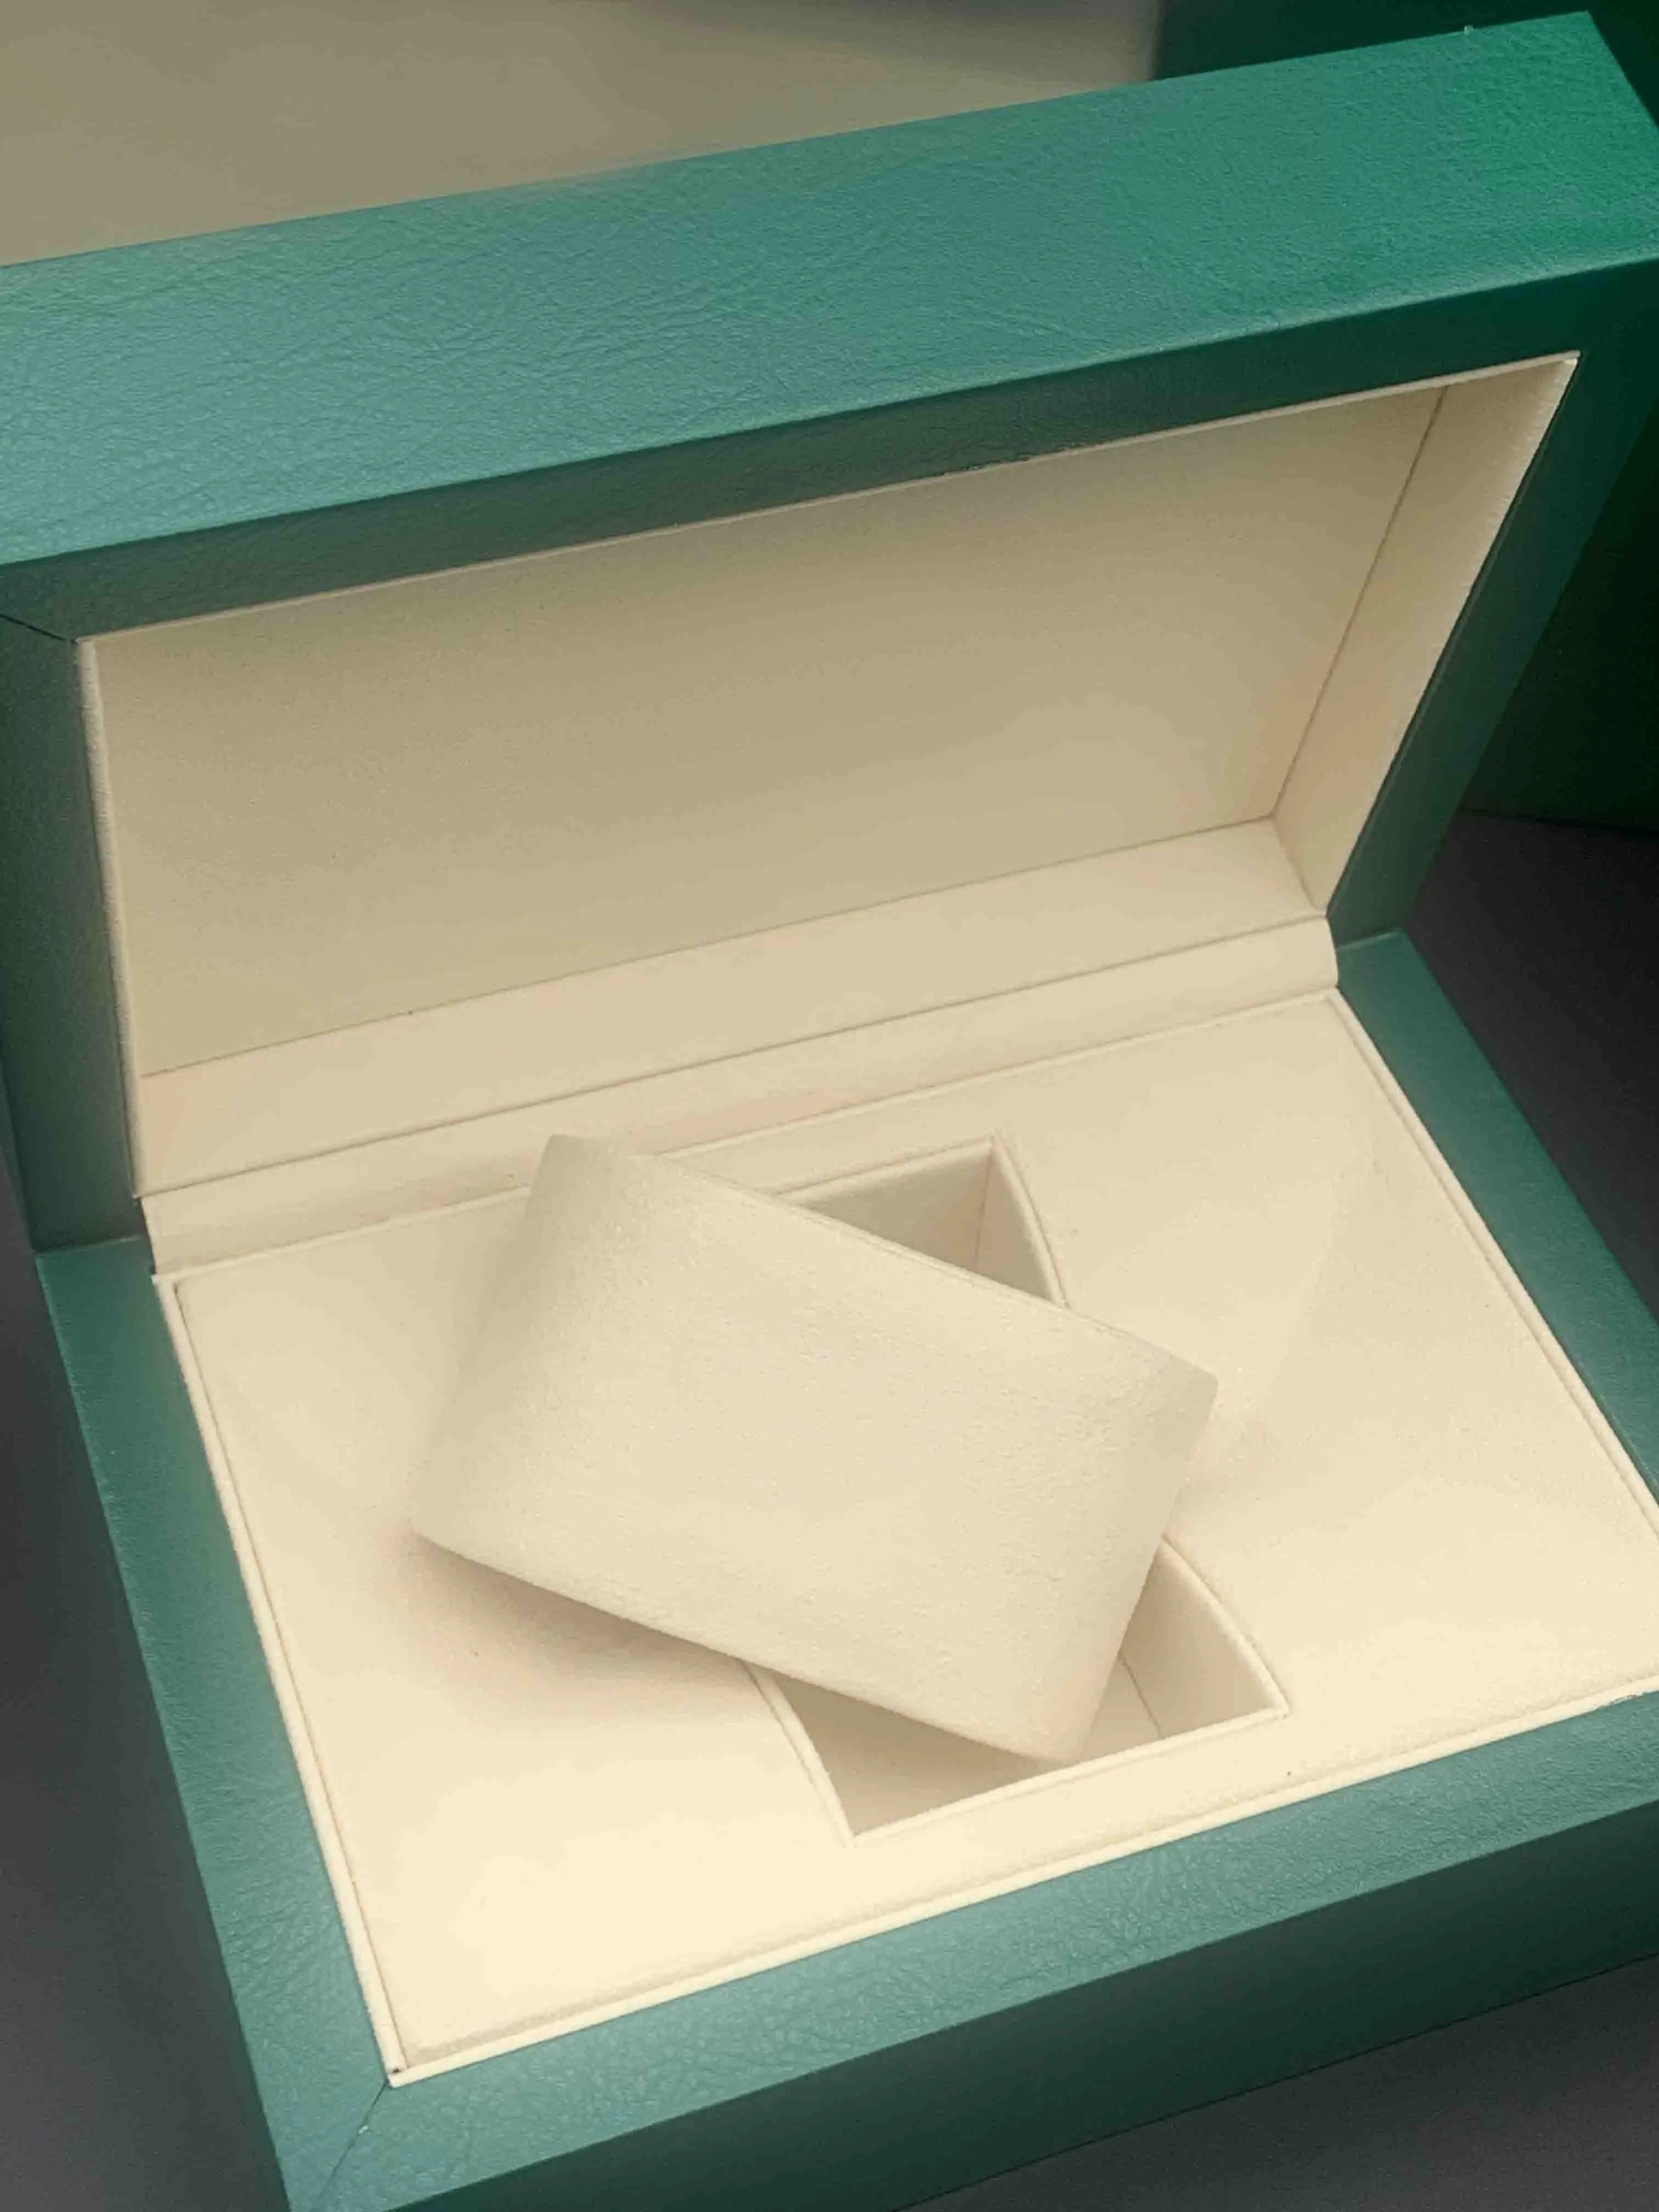 Oryginalne zielone drewniane pudełka Prezent można dostosować Model Numer seryjny Mała etykieta Anti-Pounterfeiting Card Watch Box Brochure FIL255Z